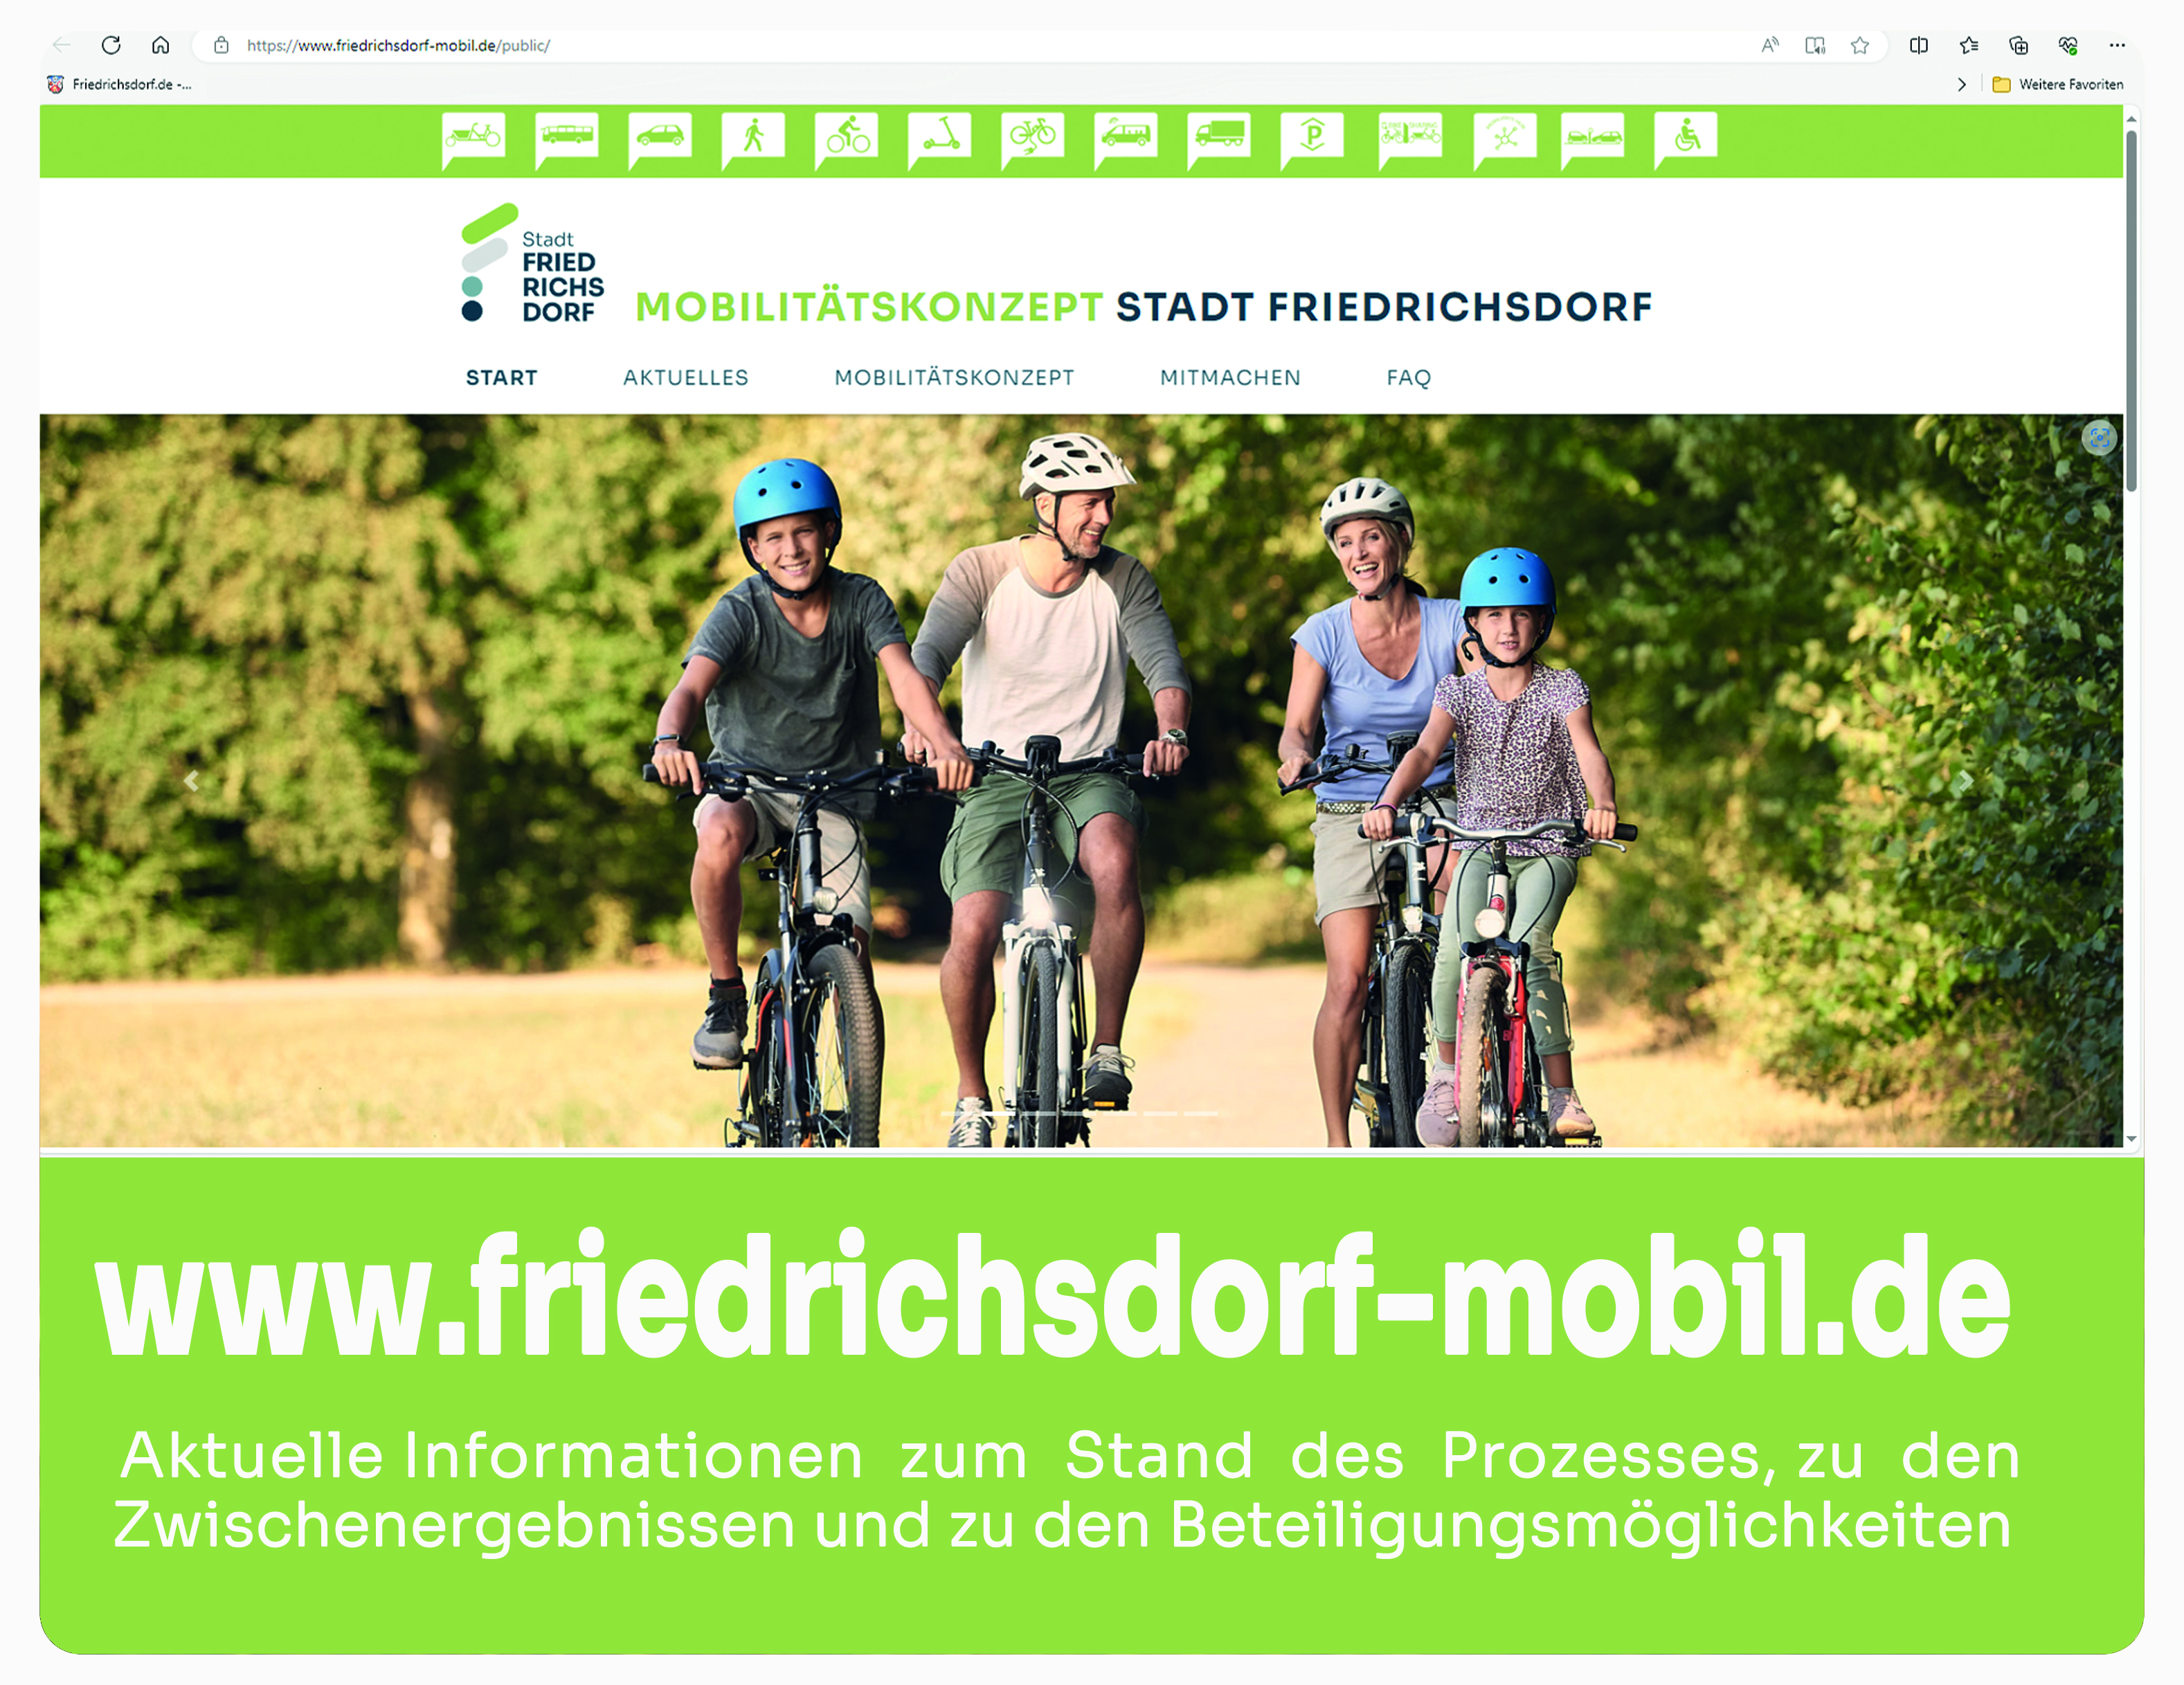 Friedrichsdorf-mobil.de Informationen zum Prozess Mobilität in Friedrichsdorf